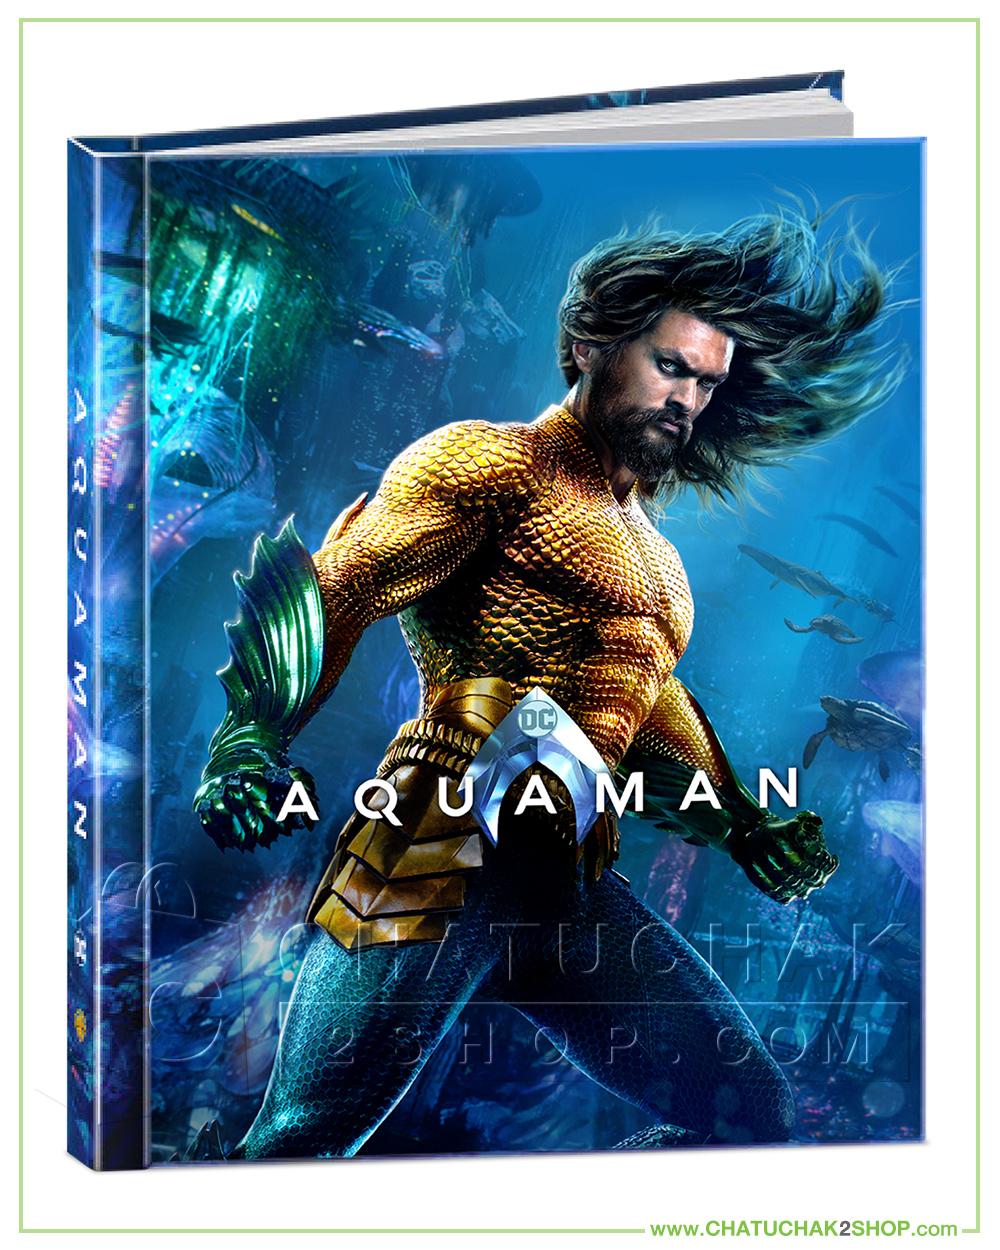 เจ้าสมุทร (ดิจิบุ๊ค บลูเรย์ 3 มิติ & บลูเรย์ปกติ) / Aquaman Blu-ray Digibook Includes 2D & 3D